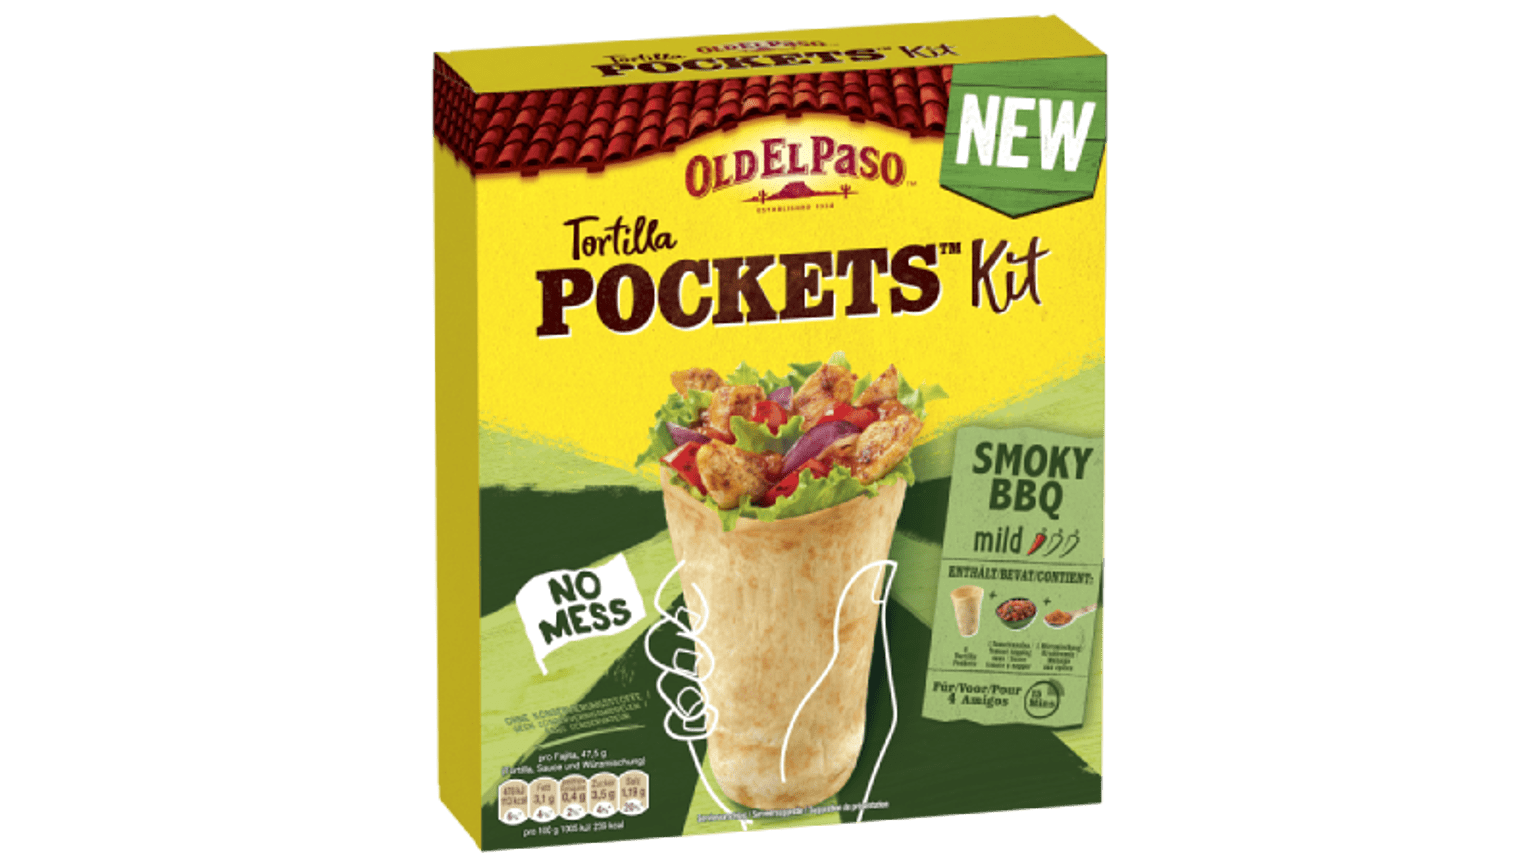 Tortilla Pockets BBQ Kit